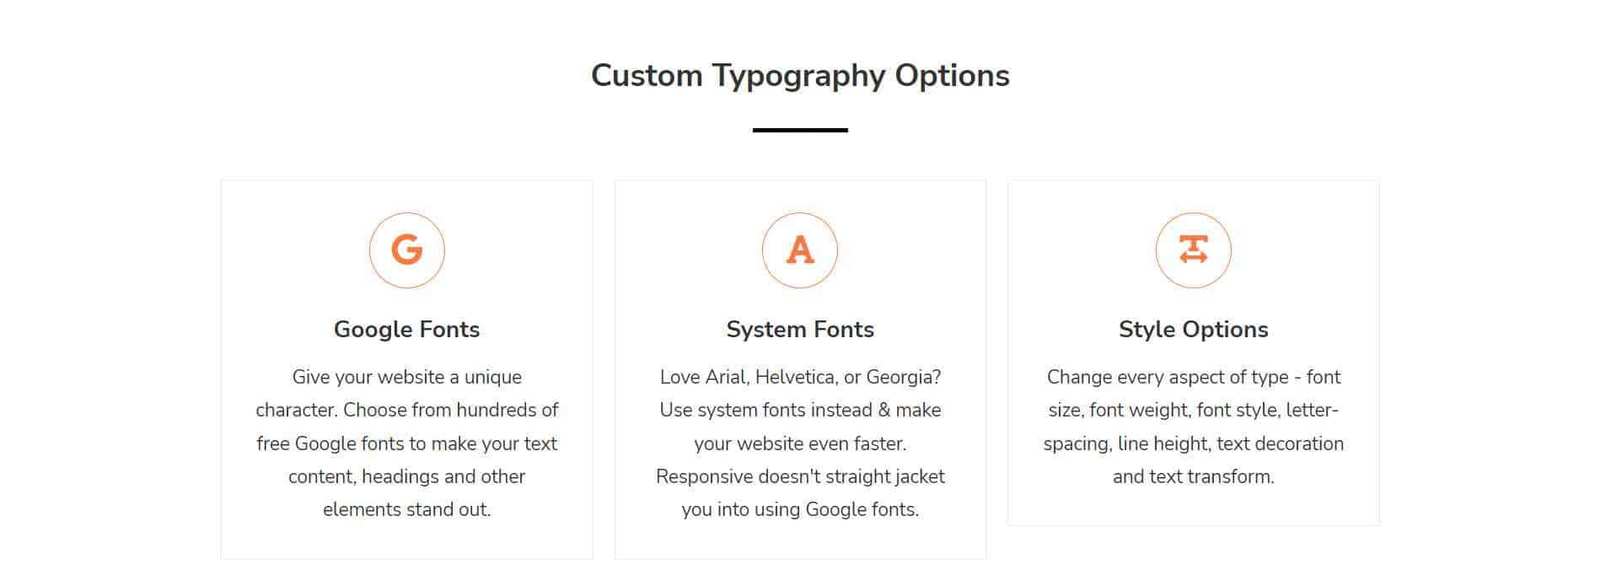 Custom Typography Options